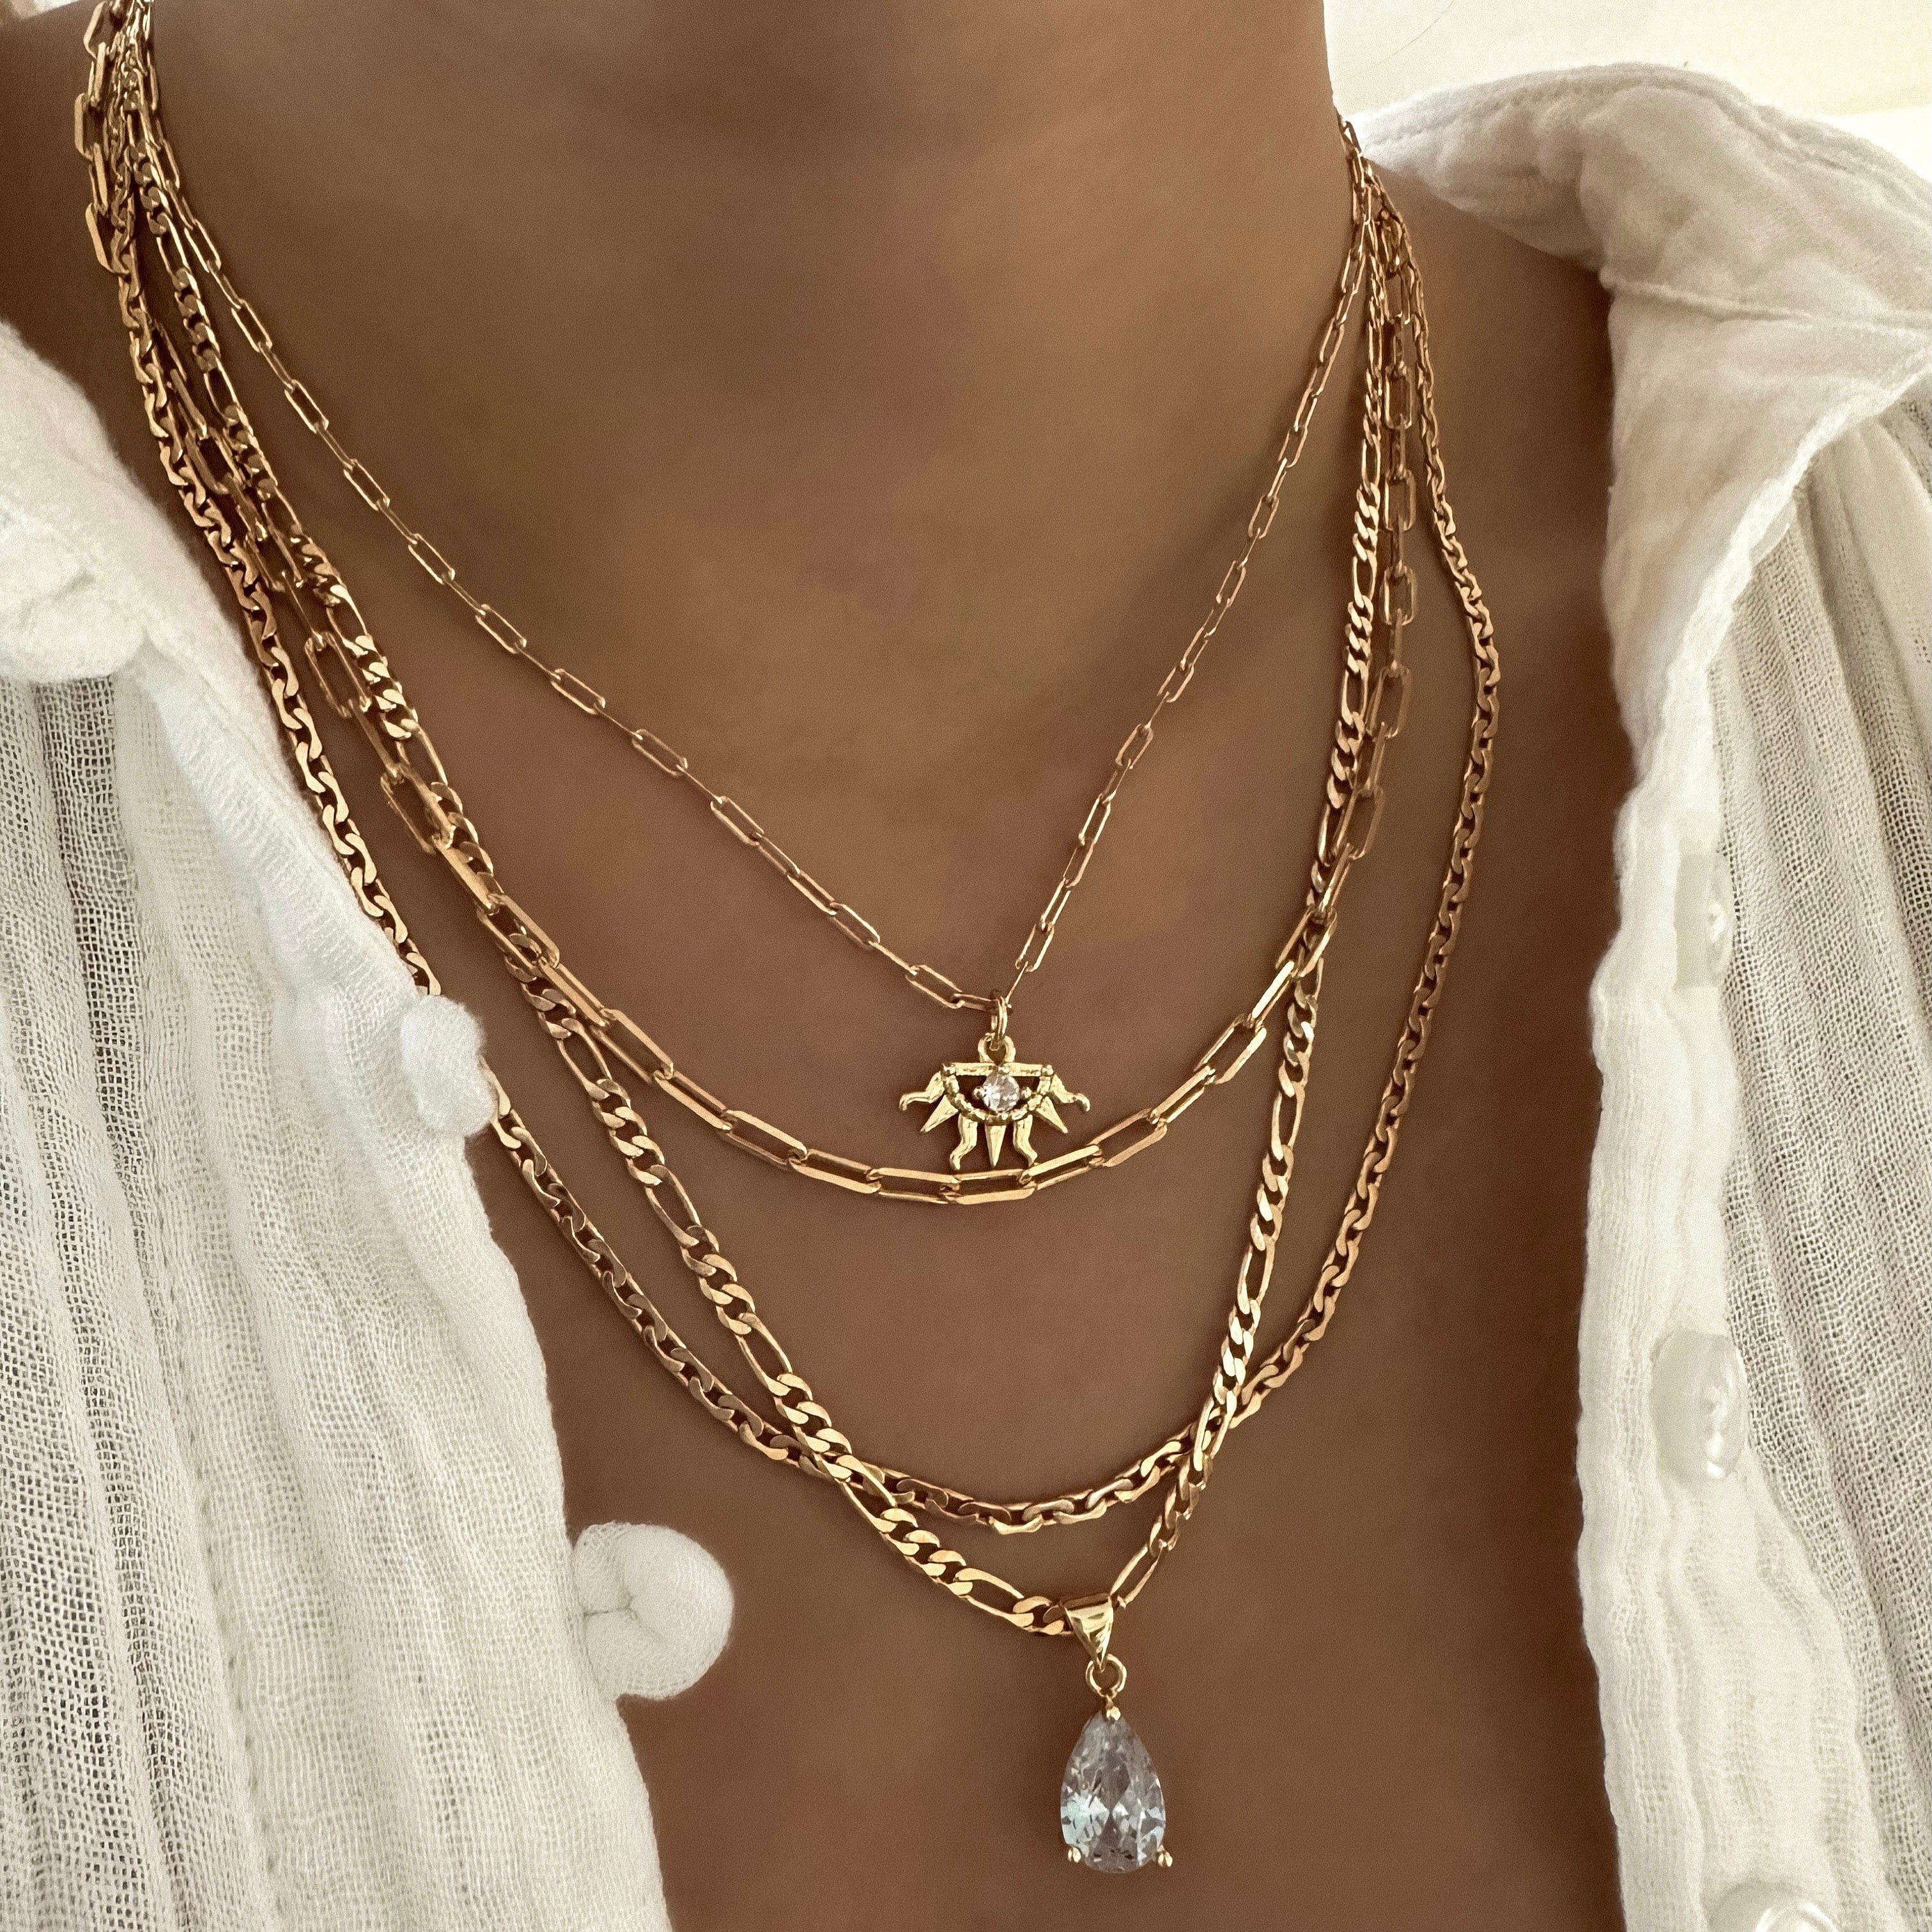 LE sensor necklace 20" Zayla Chain Necklace